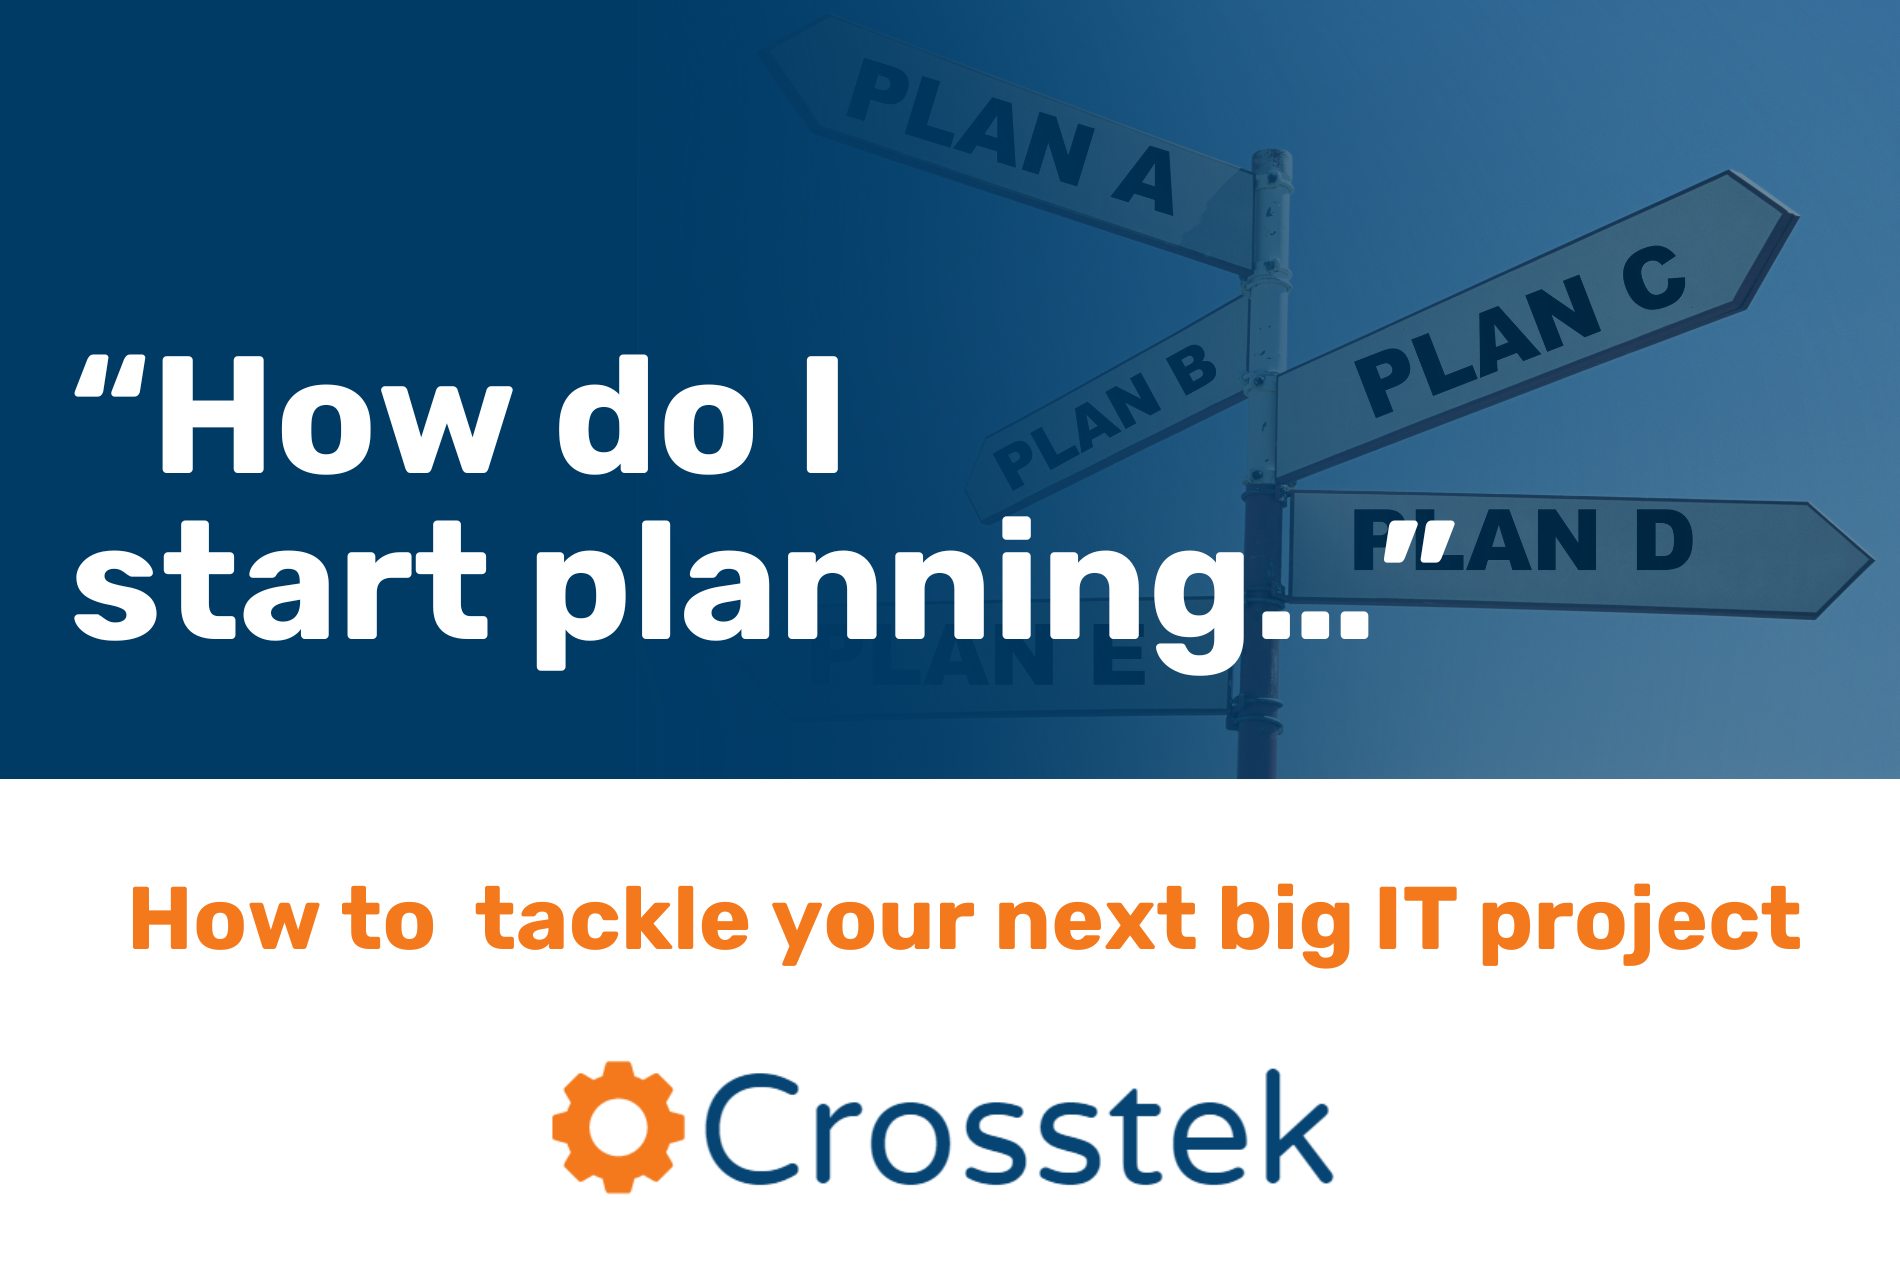 graphical thumbnail reading "How do I start planning" and Crosstek's logo